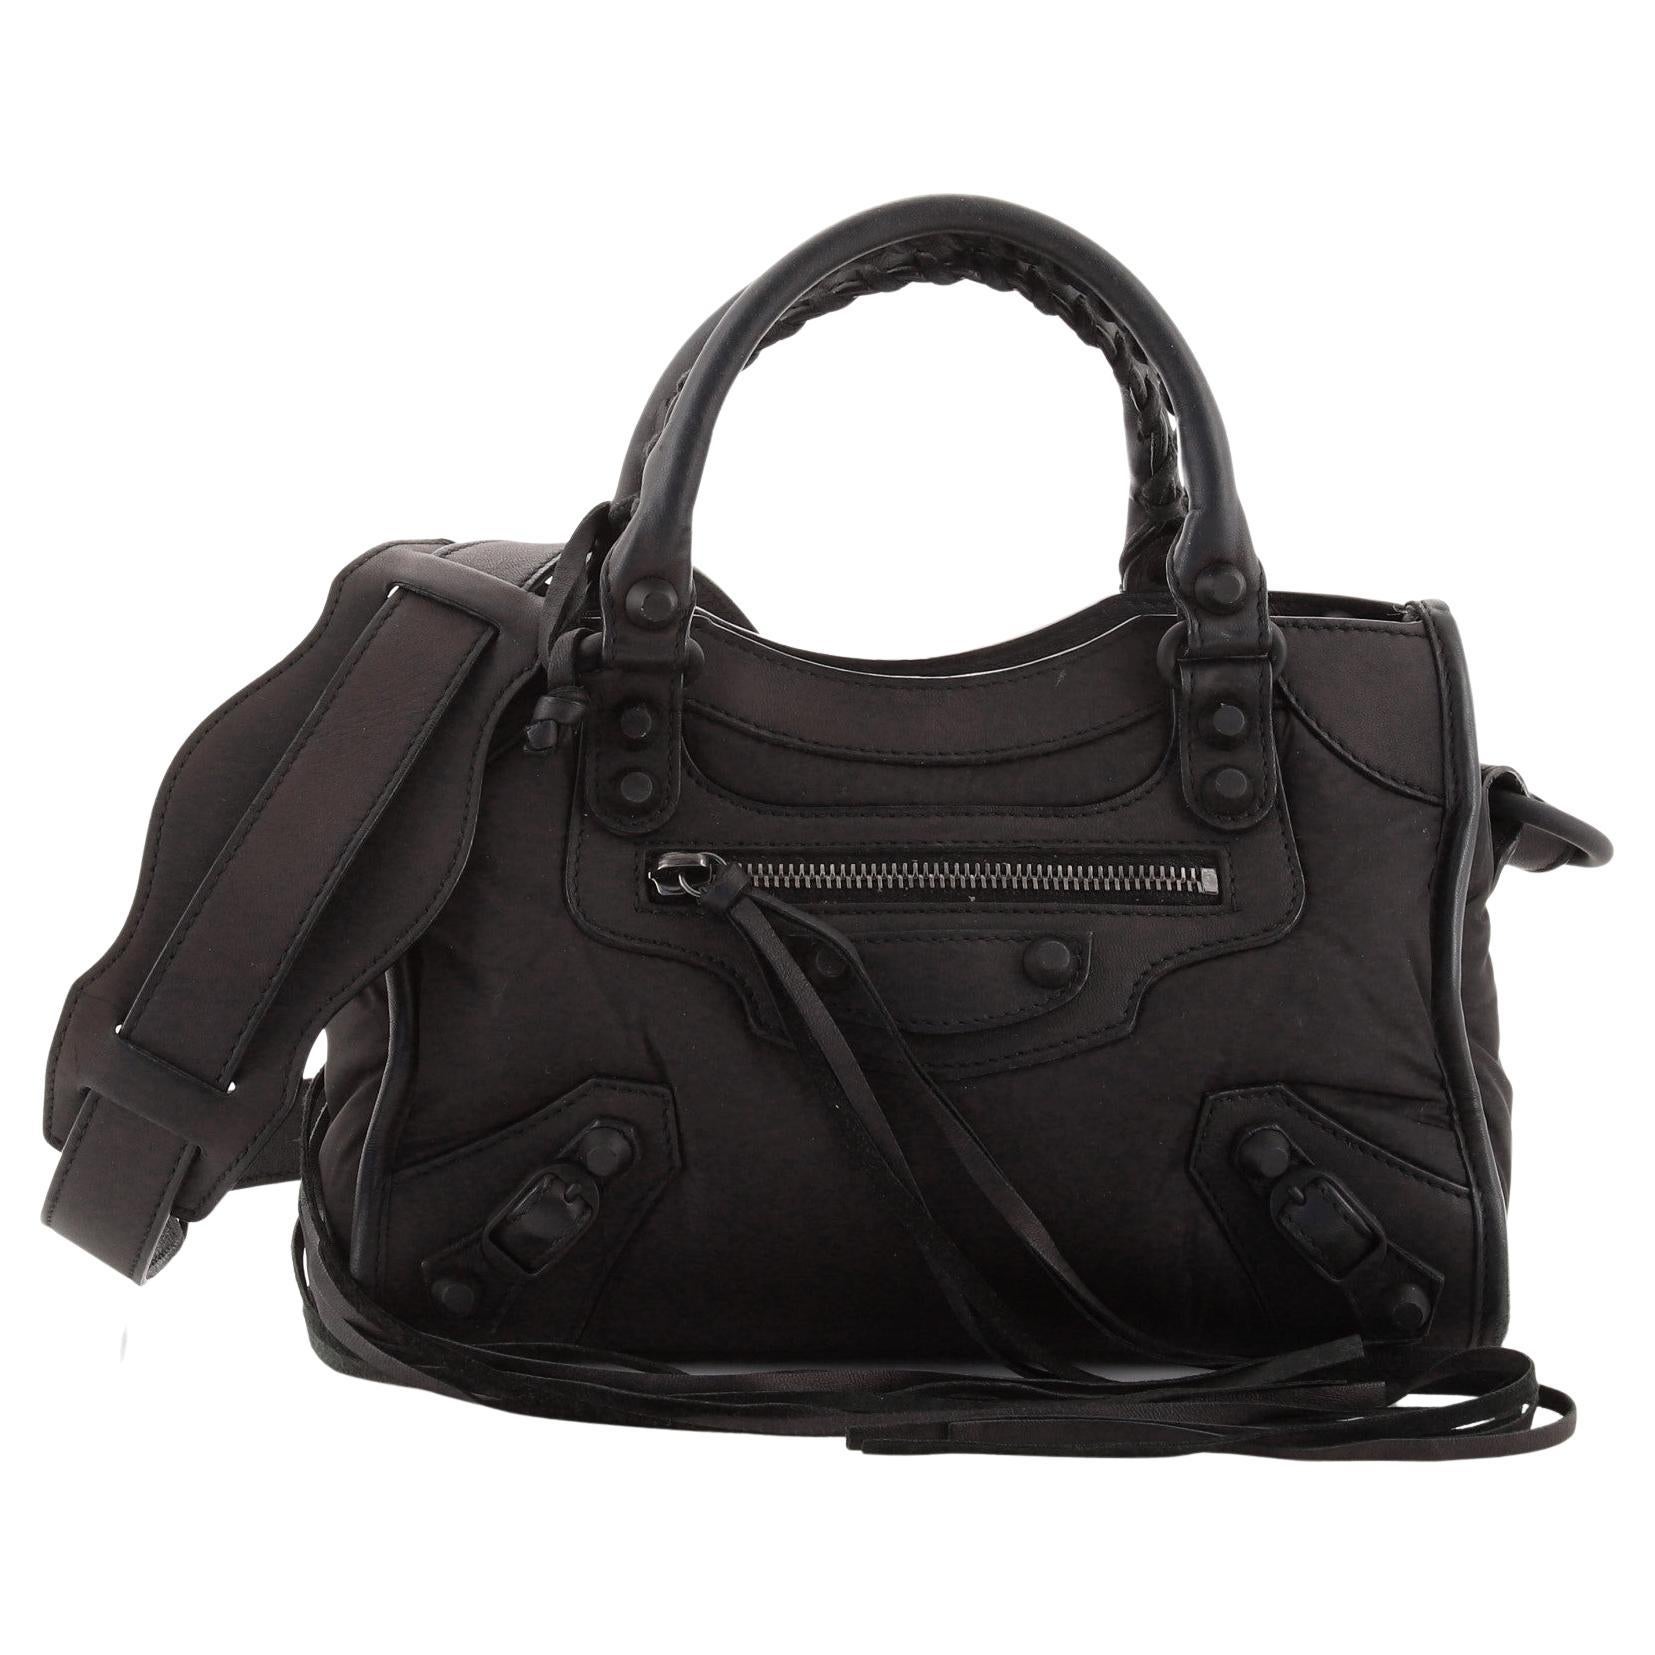 Balenciaga City Bag New - For Sale on 1stDibs